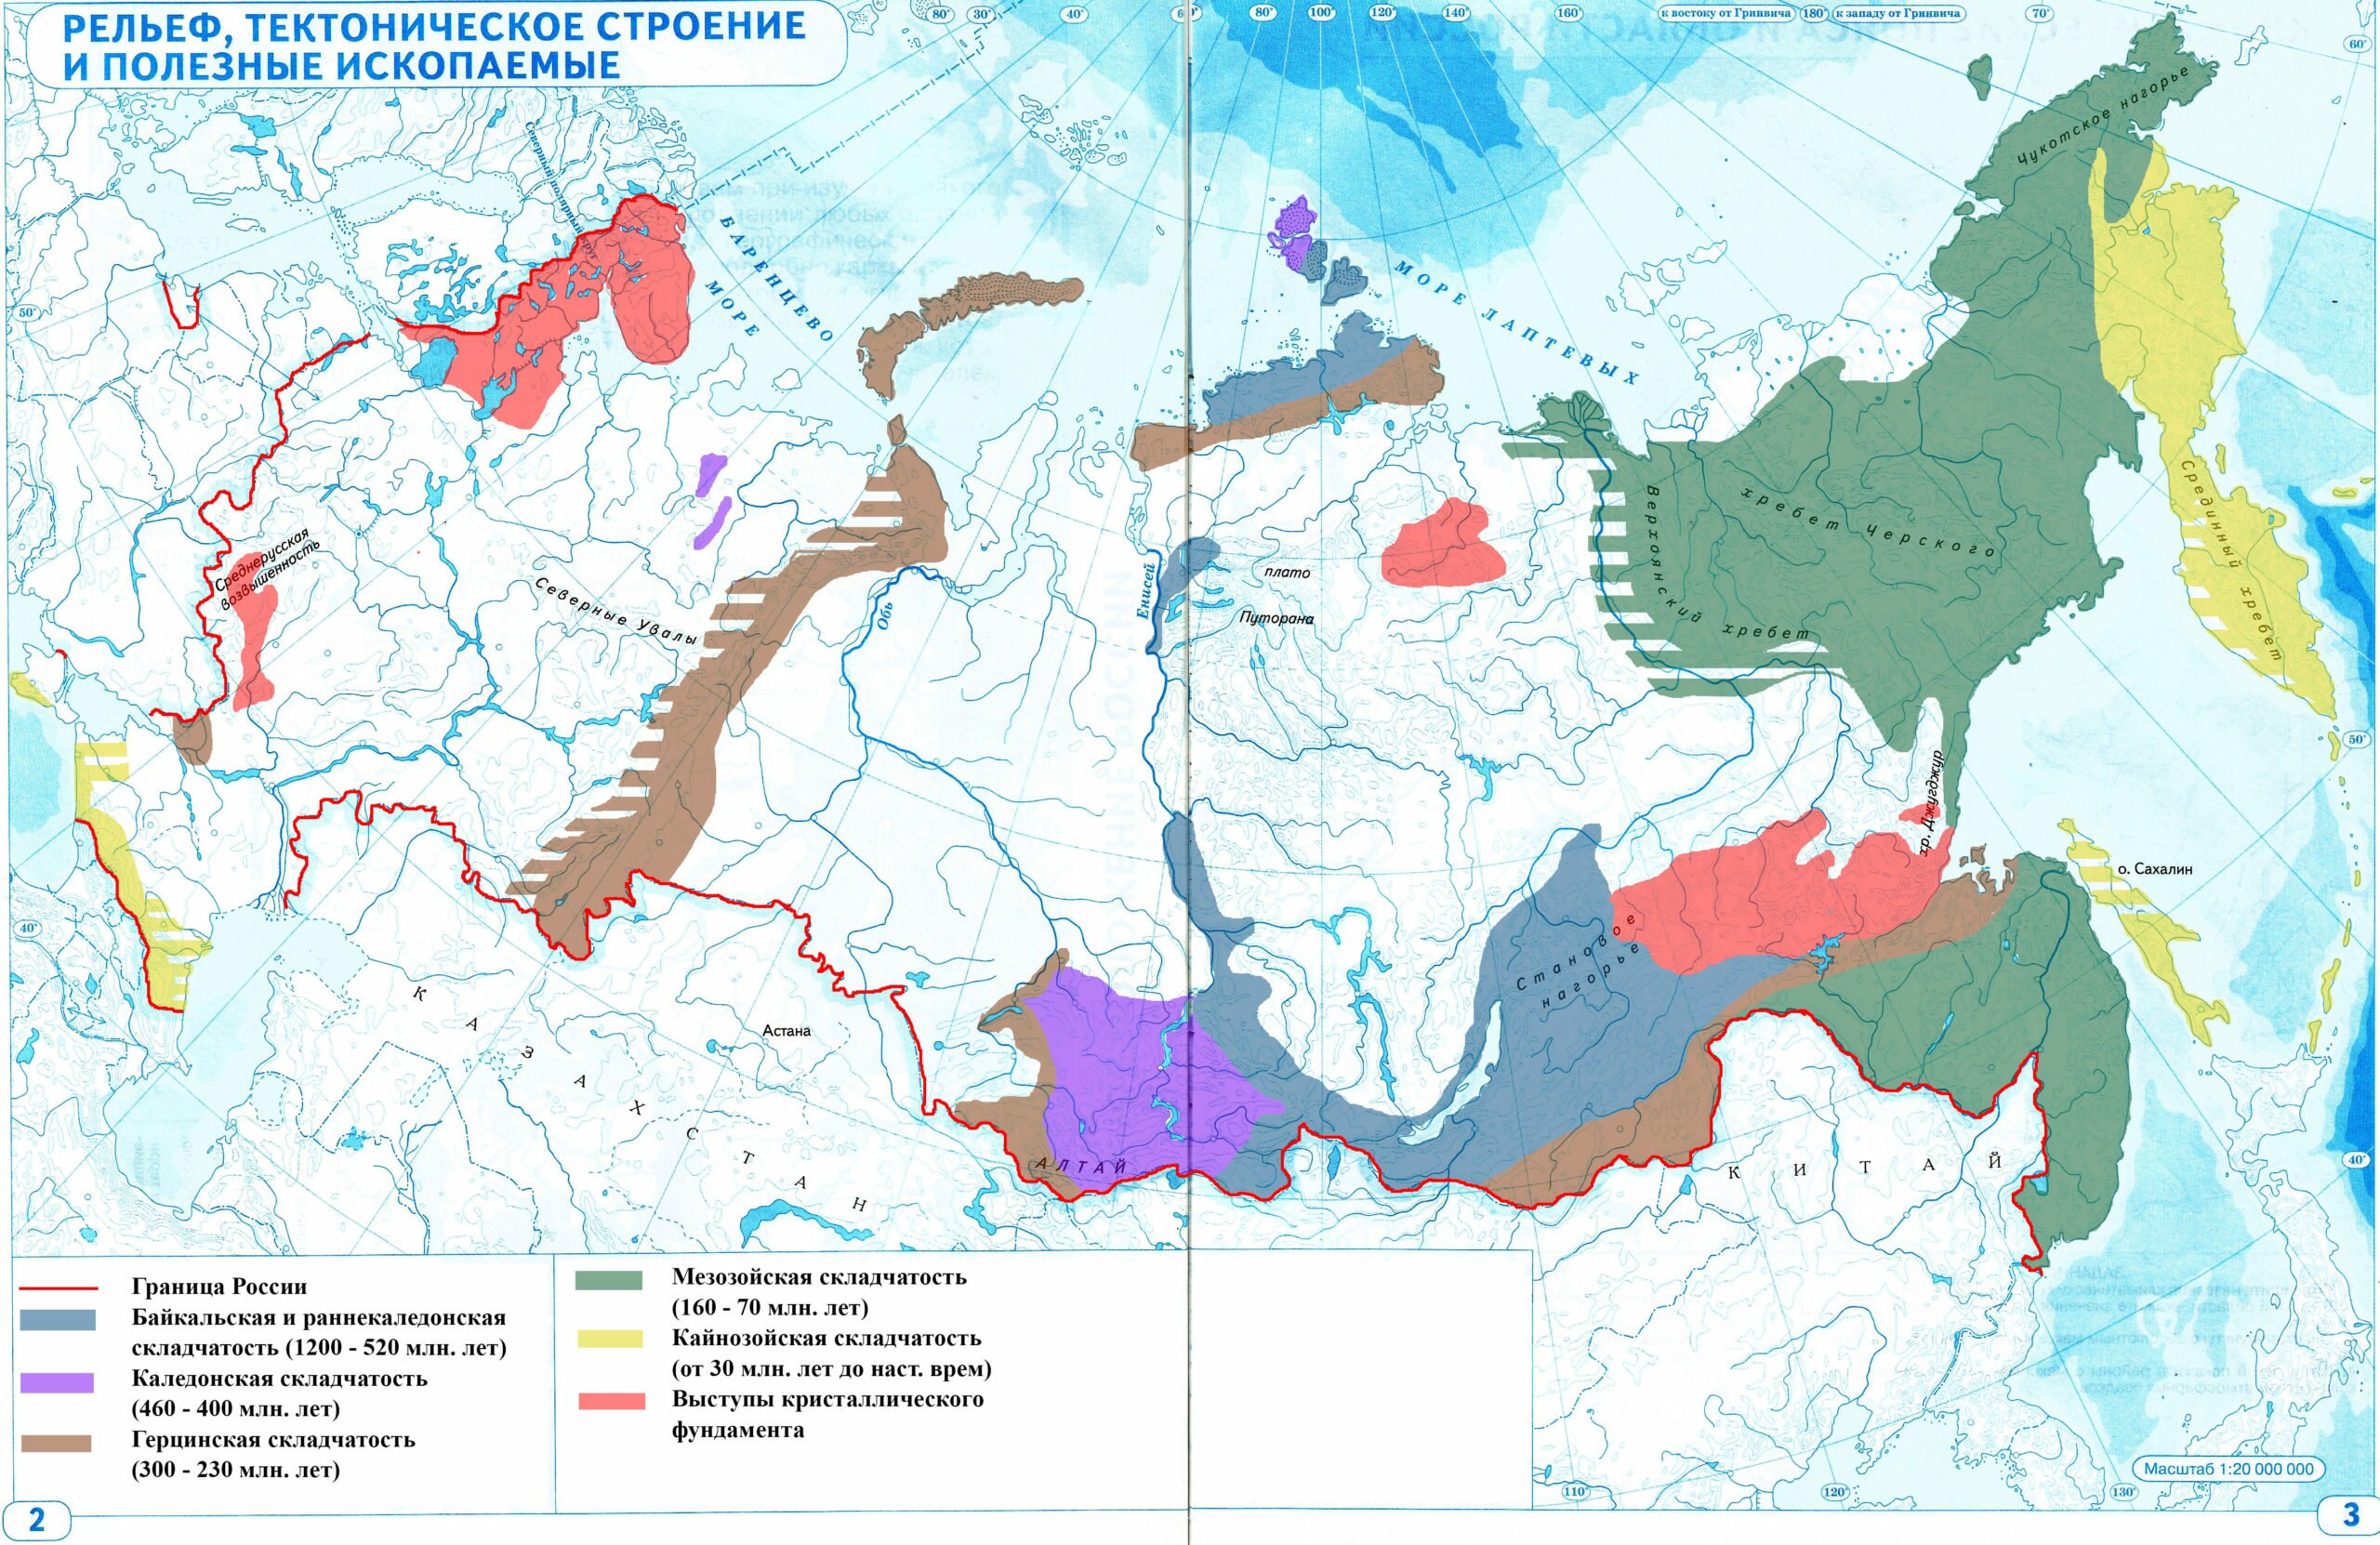 Рельеф тектоническое строение территории России полезные ископаемые